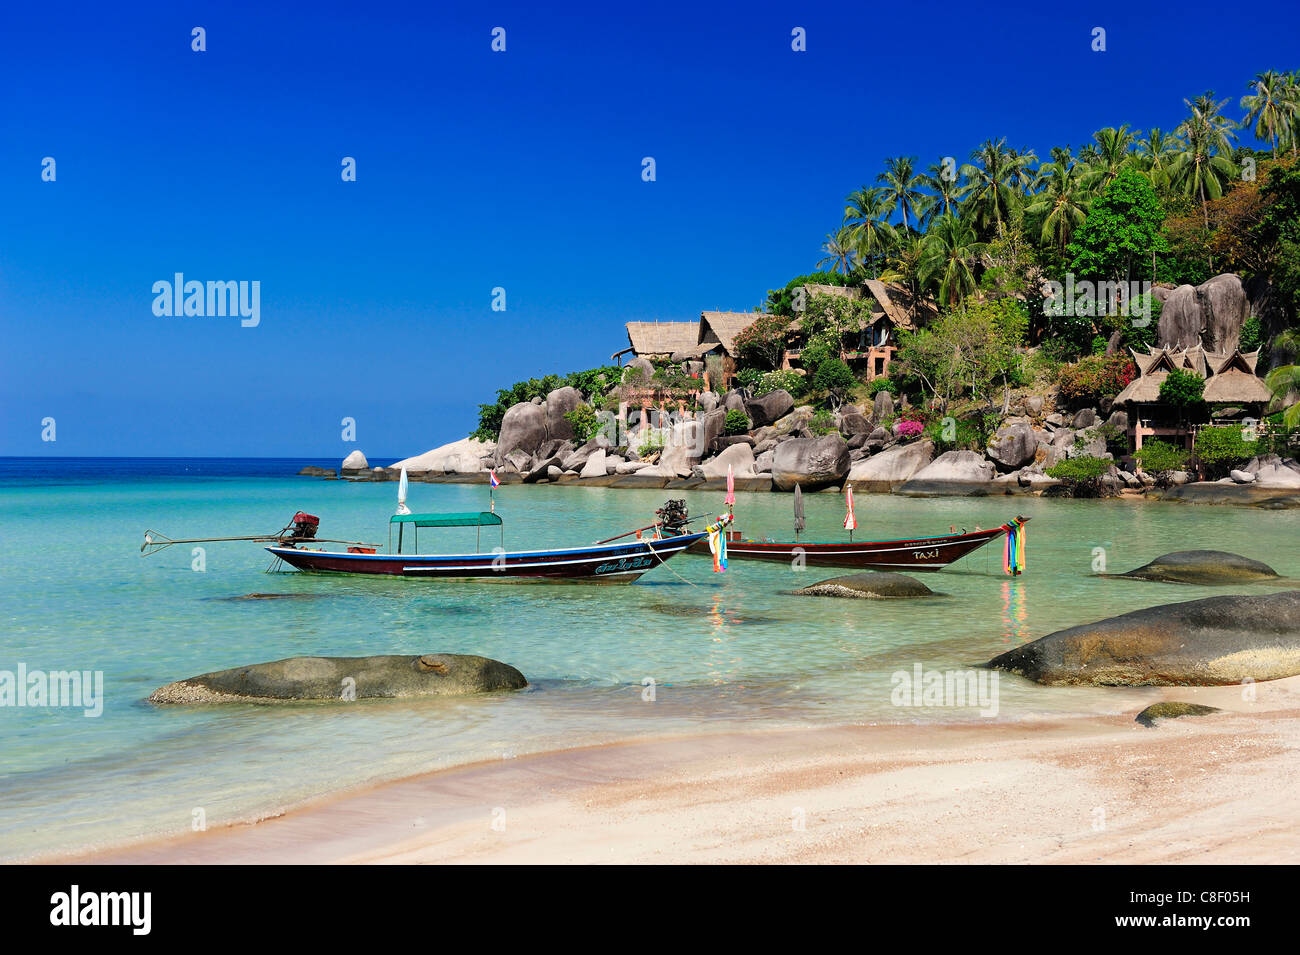 Longtail Boat, boat, Sai Ree, Beach, Koh Tao, Thailand, Asia, Stock Photo